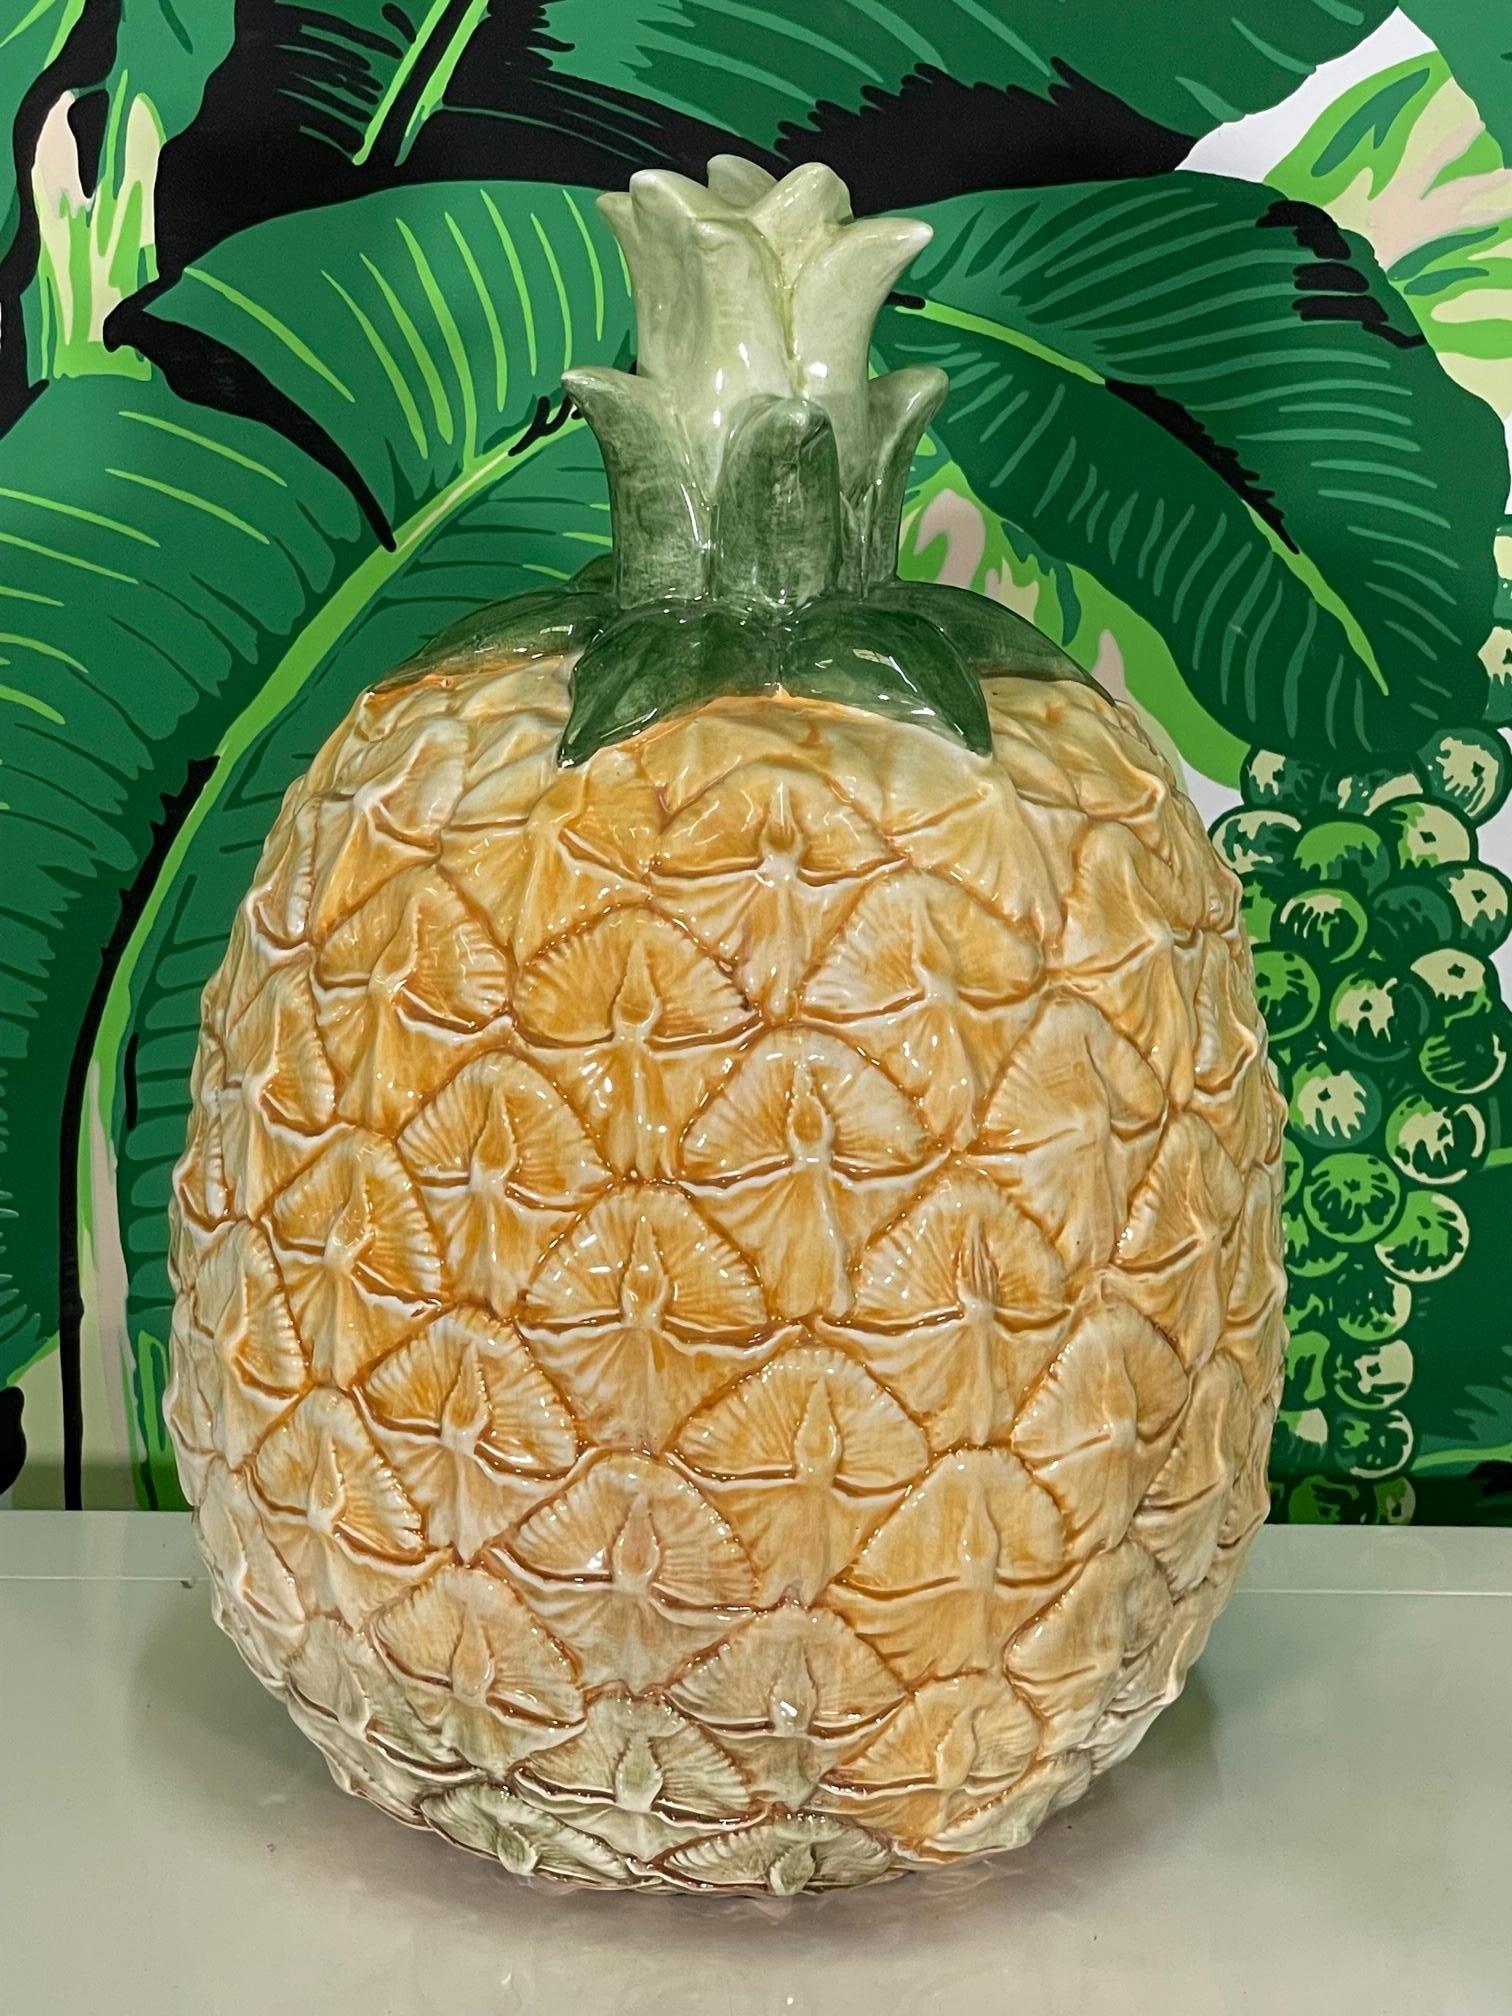 Le grand ananas en céramique peut être utilisé comme centre de table ou comme objet décoratif à exposer. Peint à la main et fini avec une glaçure brillante. Bon état avec seulement des imperfections mineures correspondant à l'âge (voir photos).
Pour